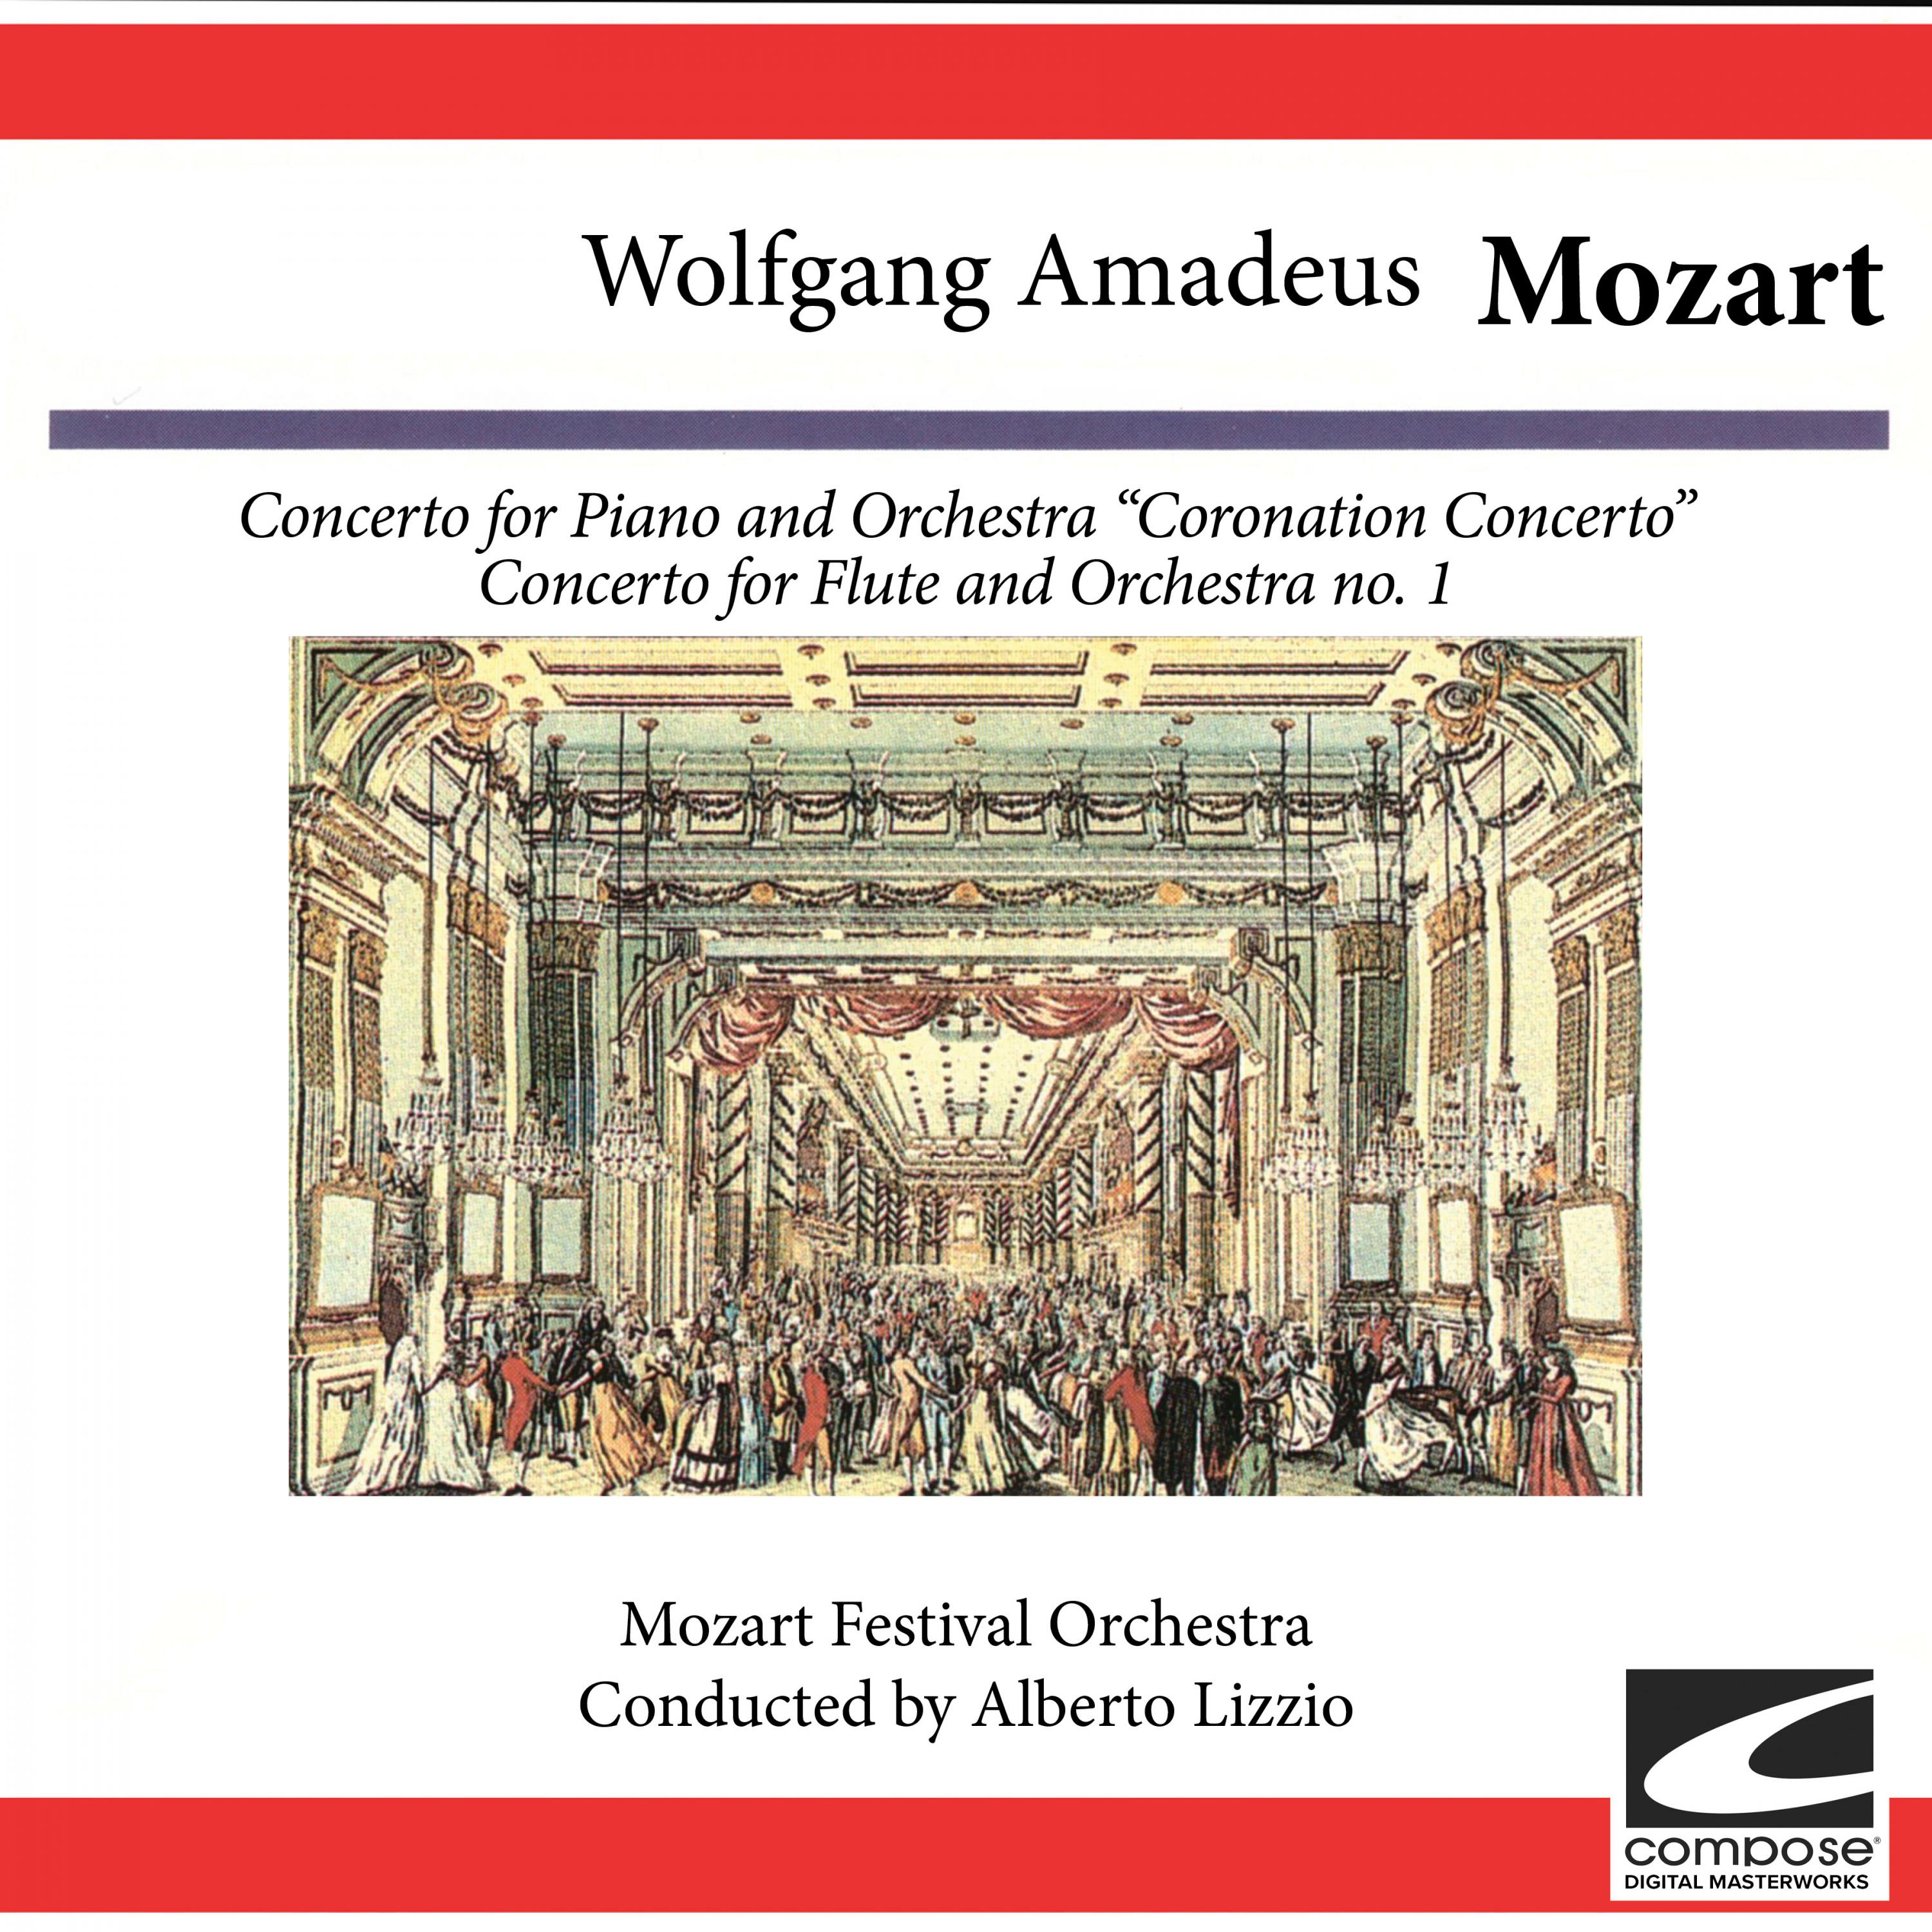 Mozart Festival Orchestra - Concerto for Piano and Orchestra No. 26 in D Major, KV 537: Coronation Concerto - Allegretto (feat. Alberto Lizzio)